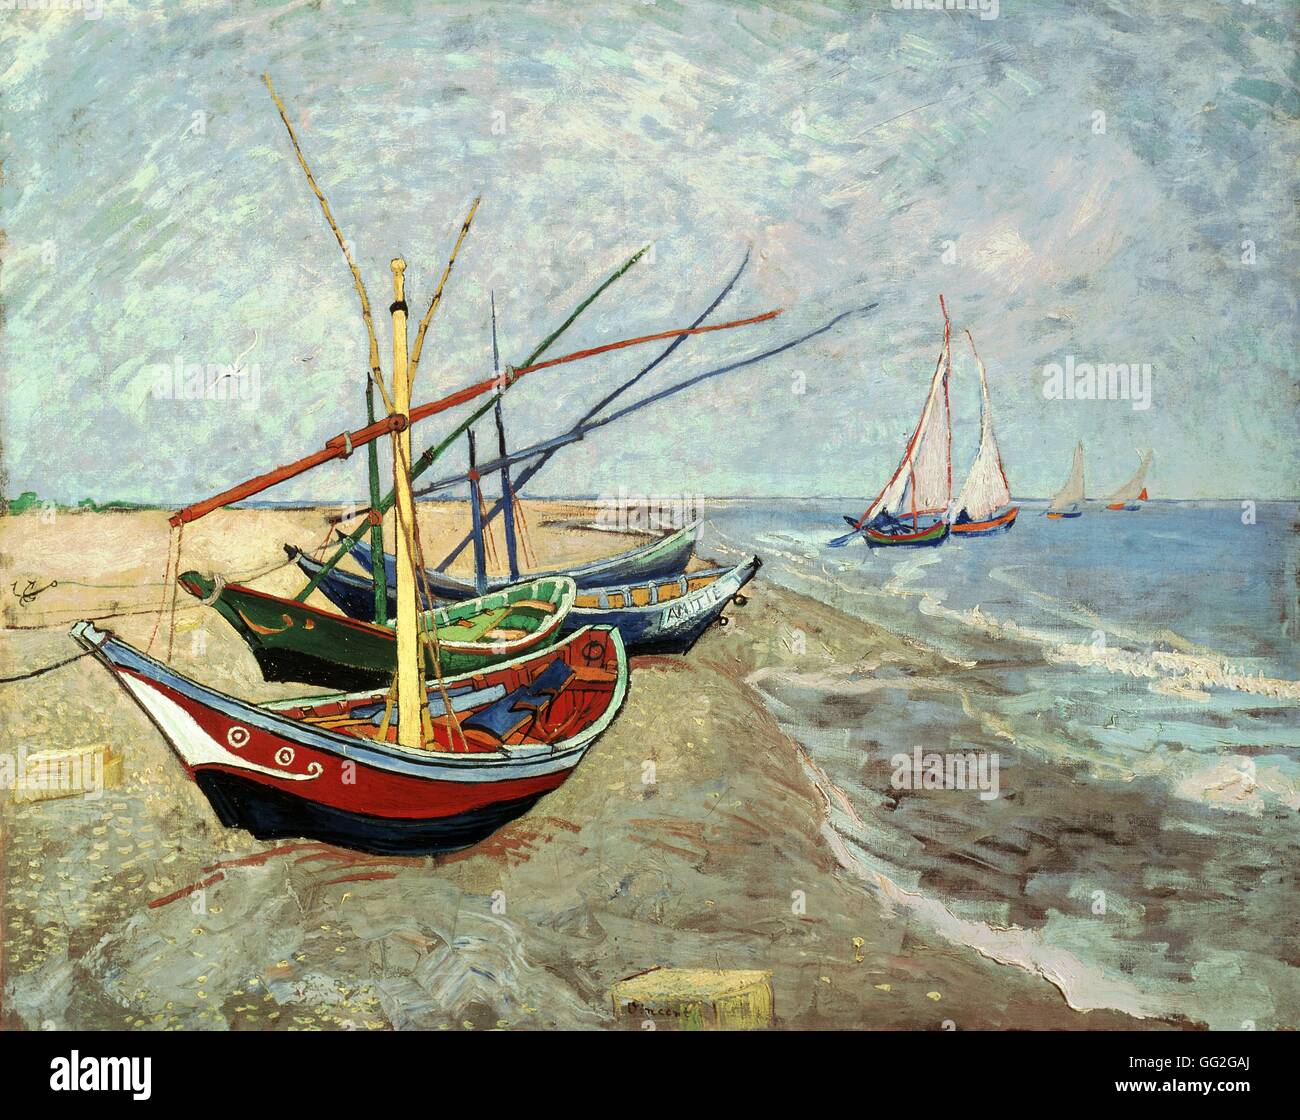 Vincent van Gogh scuola olandese barche di pescatori sulla spiaggia di Les Saintes-Maries-de-la-Mer Giugno 1888 olio su tela (65 x 81,5 cm) di Amsterdam, il museo di Van Gogh Foto Stock